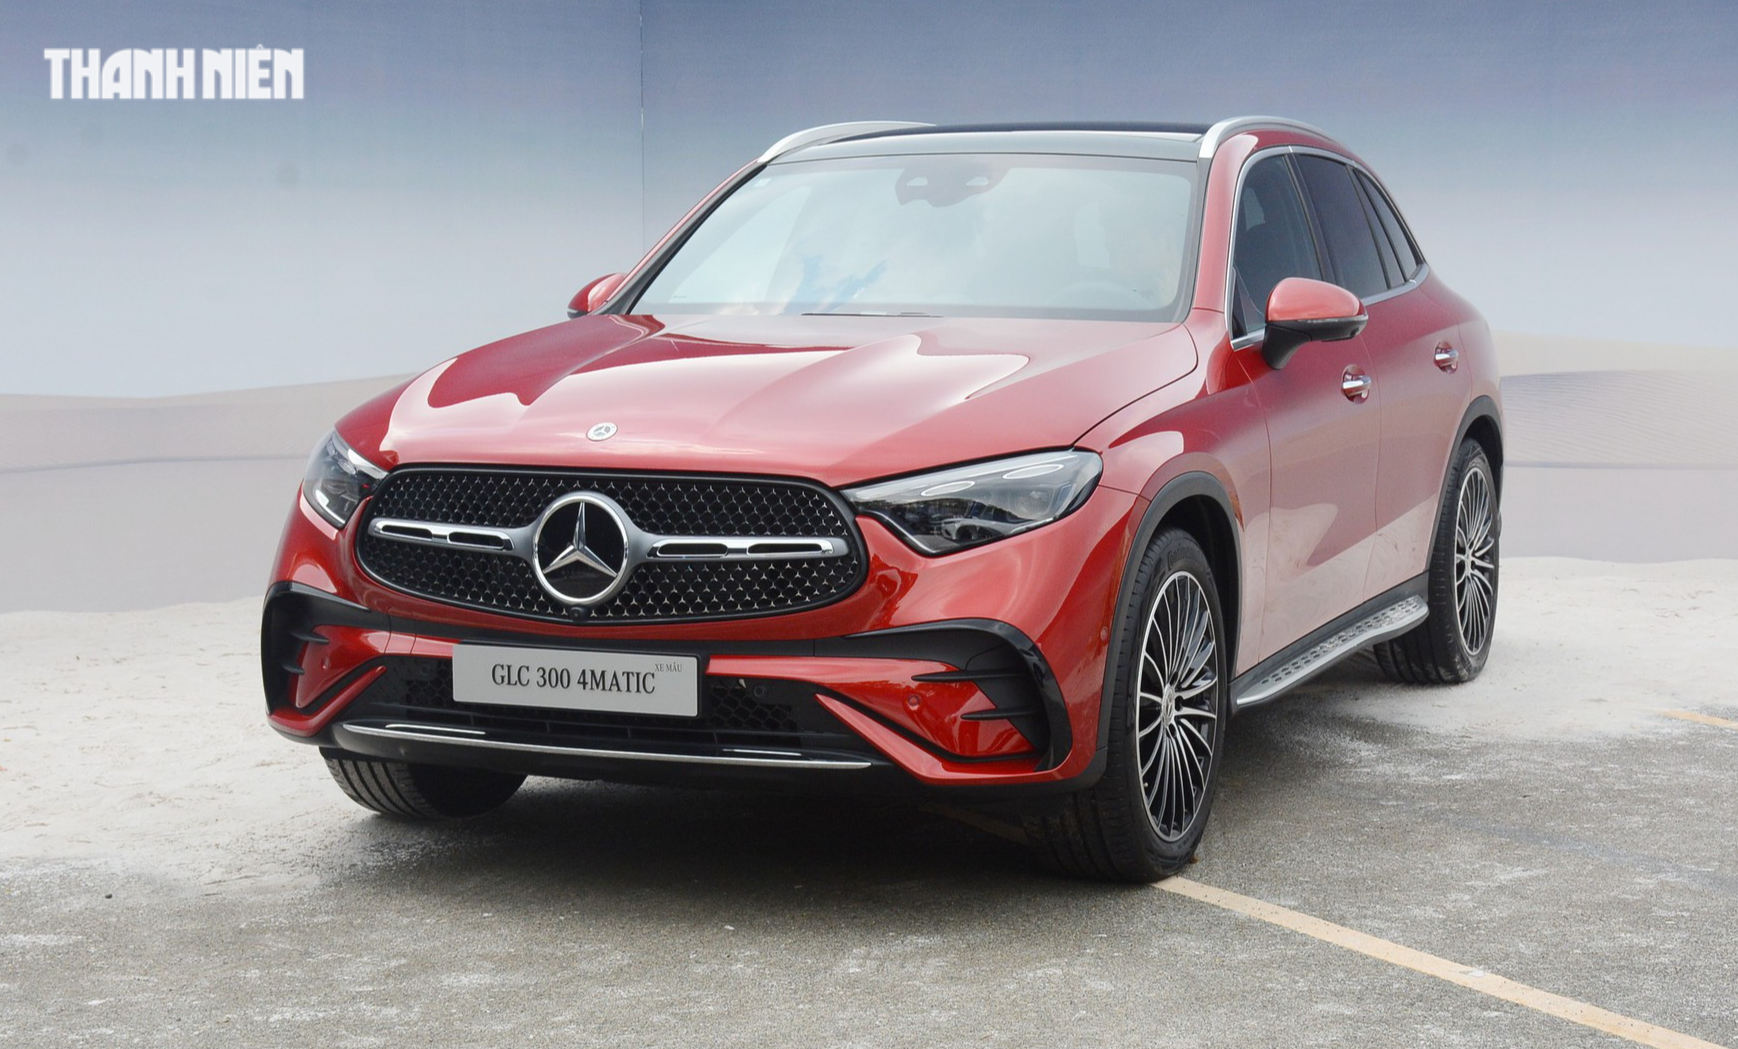 Mercedes-Benz GLC thế hệ mới lắp ráp tại Việt Nam, giá từ 2,299 tỉ đồng - Ảnh 2.